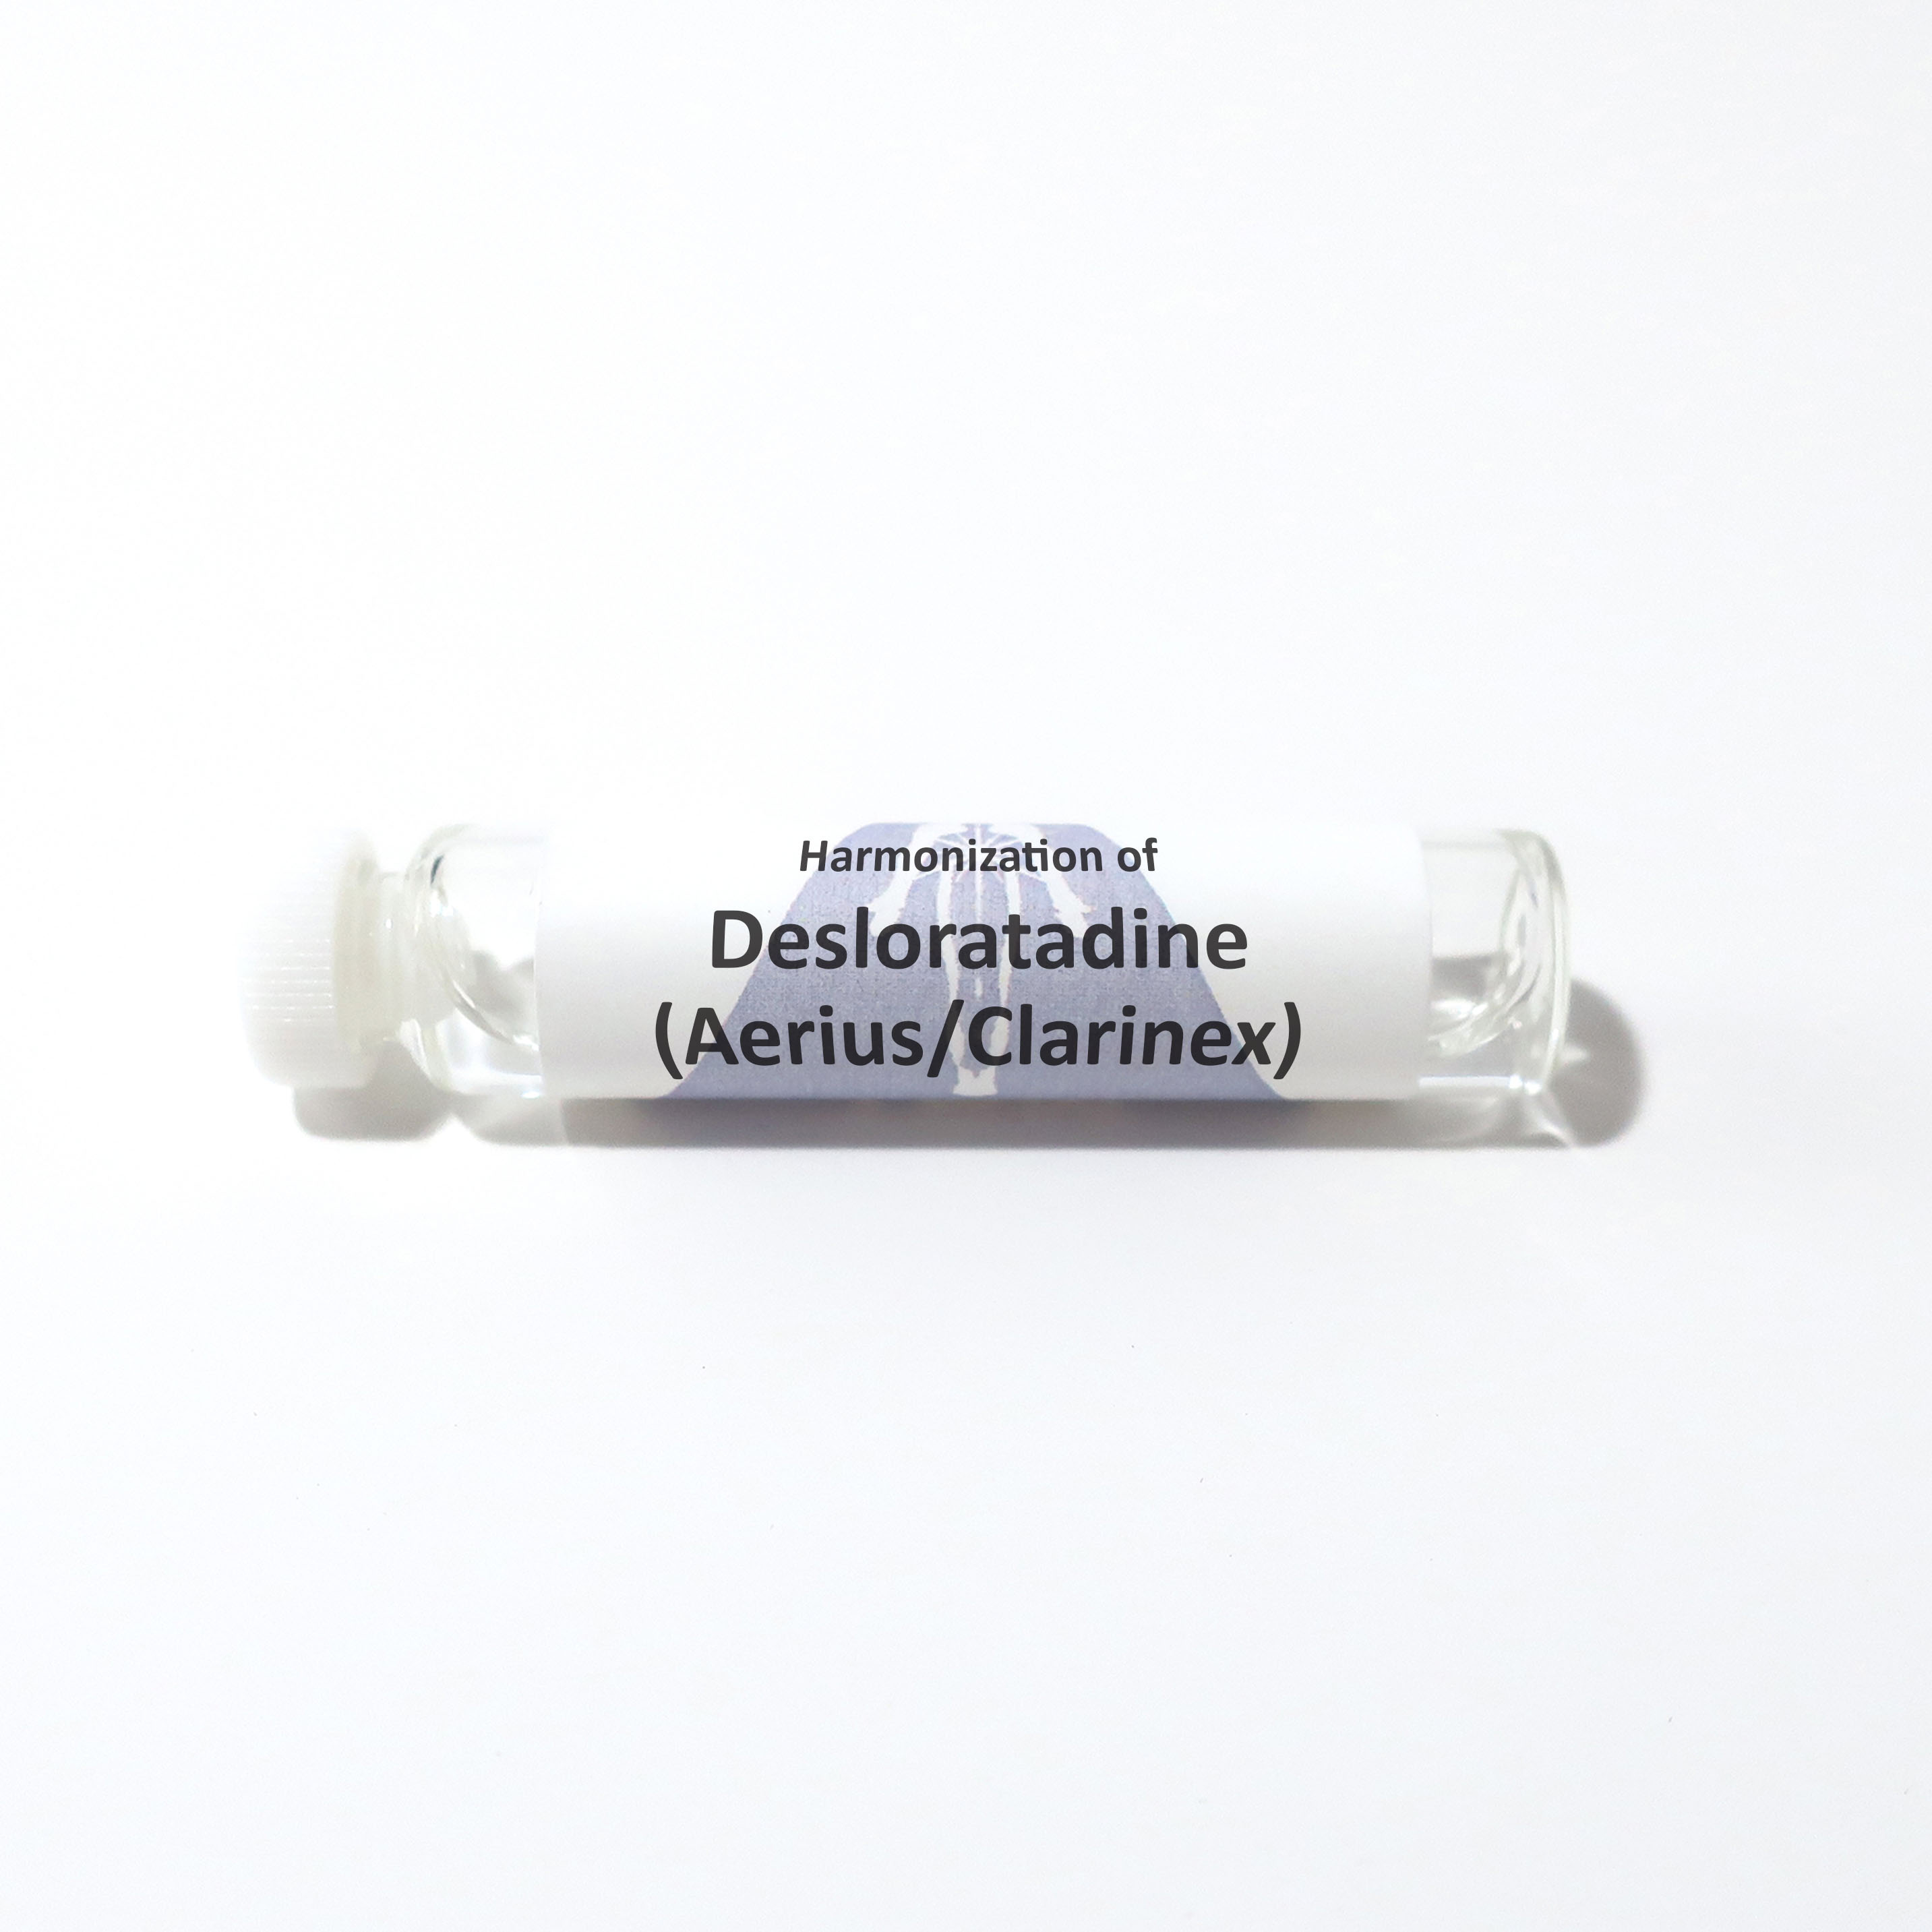 Desloratadine (Aerius/Clarinex)